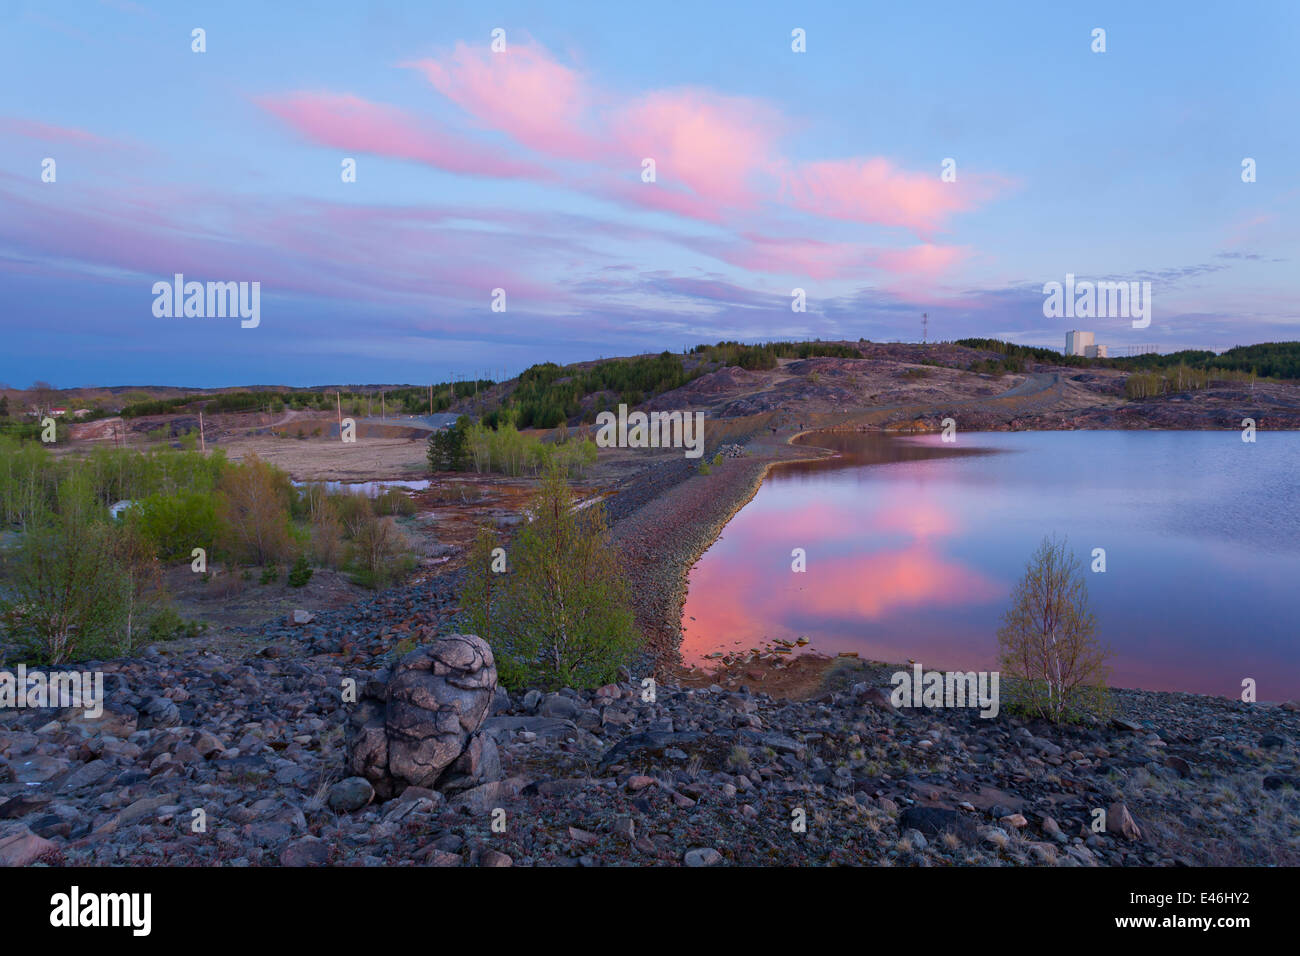 Erhöhten Blick auf einer Halde Teich Austritt von Flüssigkeit ins umliegende Sumpfgebiet von einem Hügel in einem farbenfrohen Sonnenuntergang. Sudbury. Stockfoto